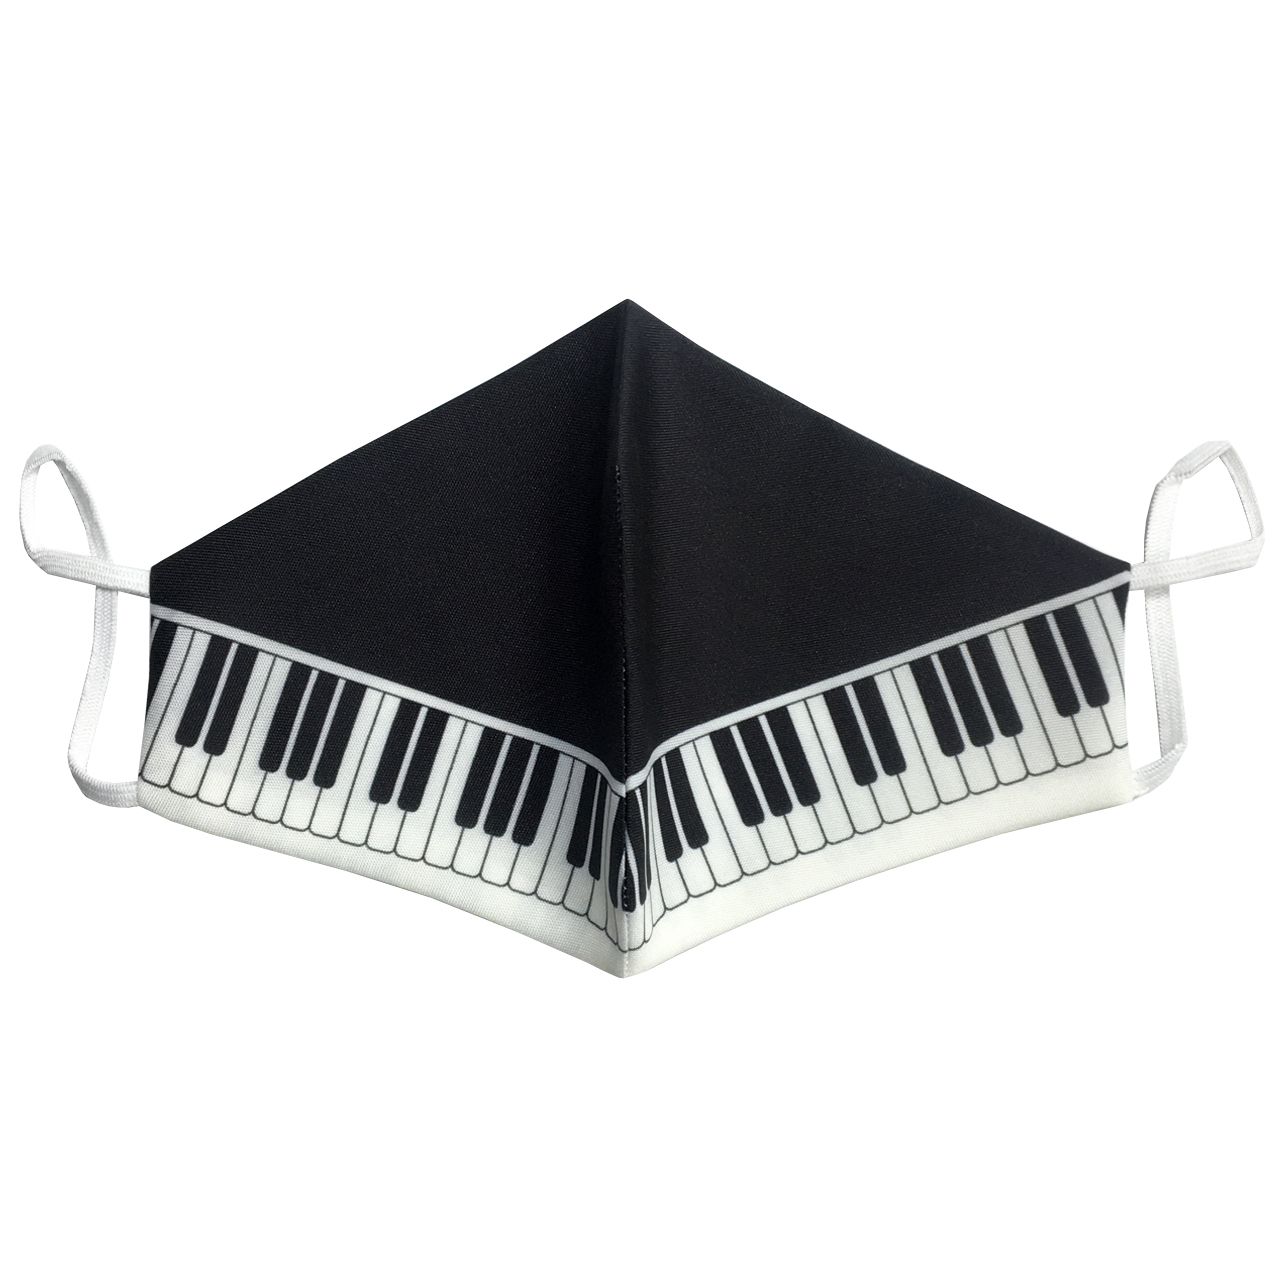 ماسک تزیینی کیسمی مدل پیانو -  - 1